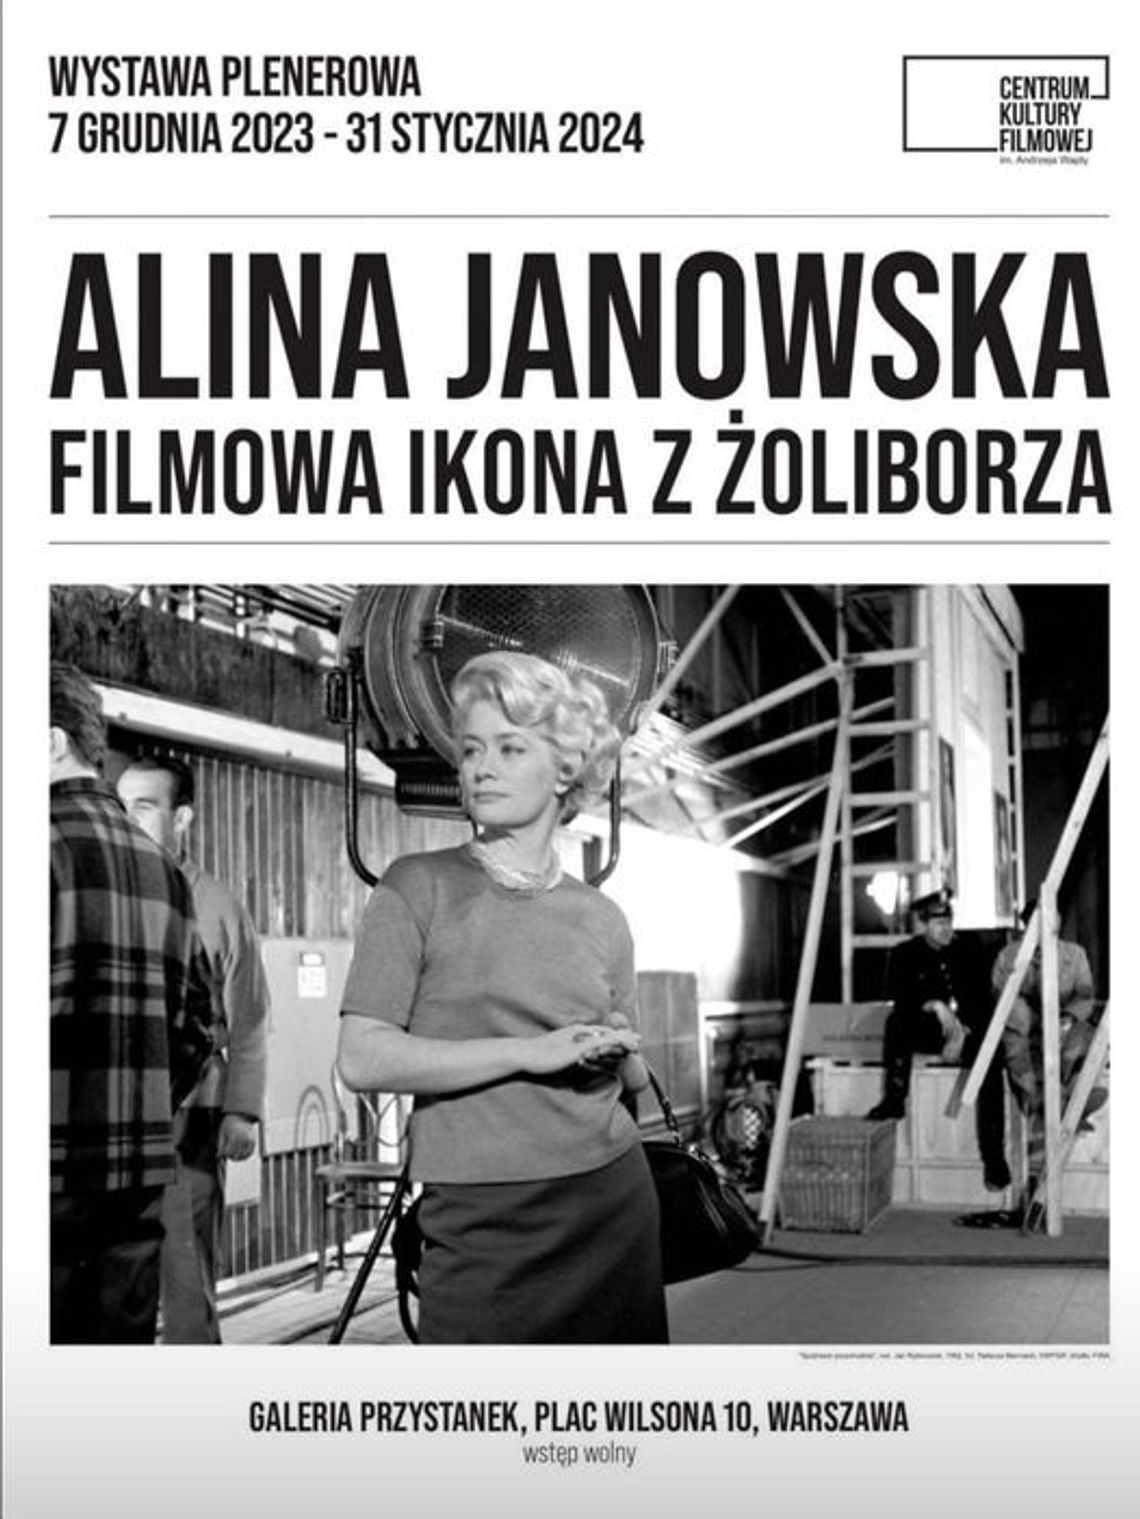 Alina Janowska - filmowa ikona Żoliborza i królowa komedii